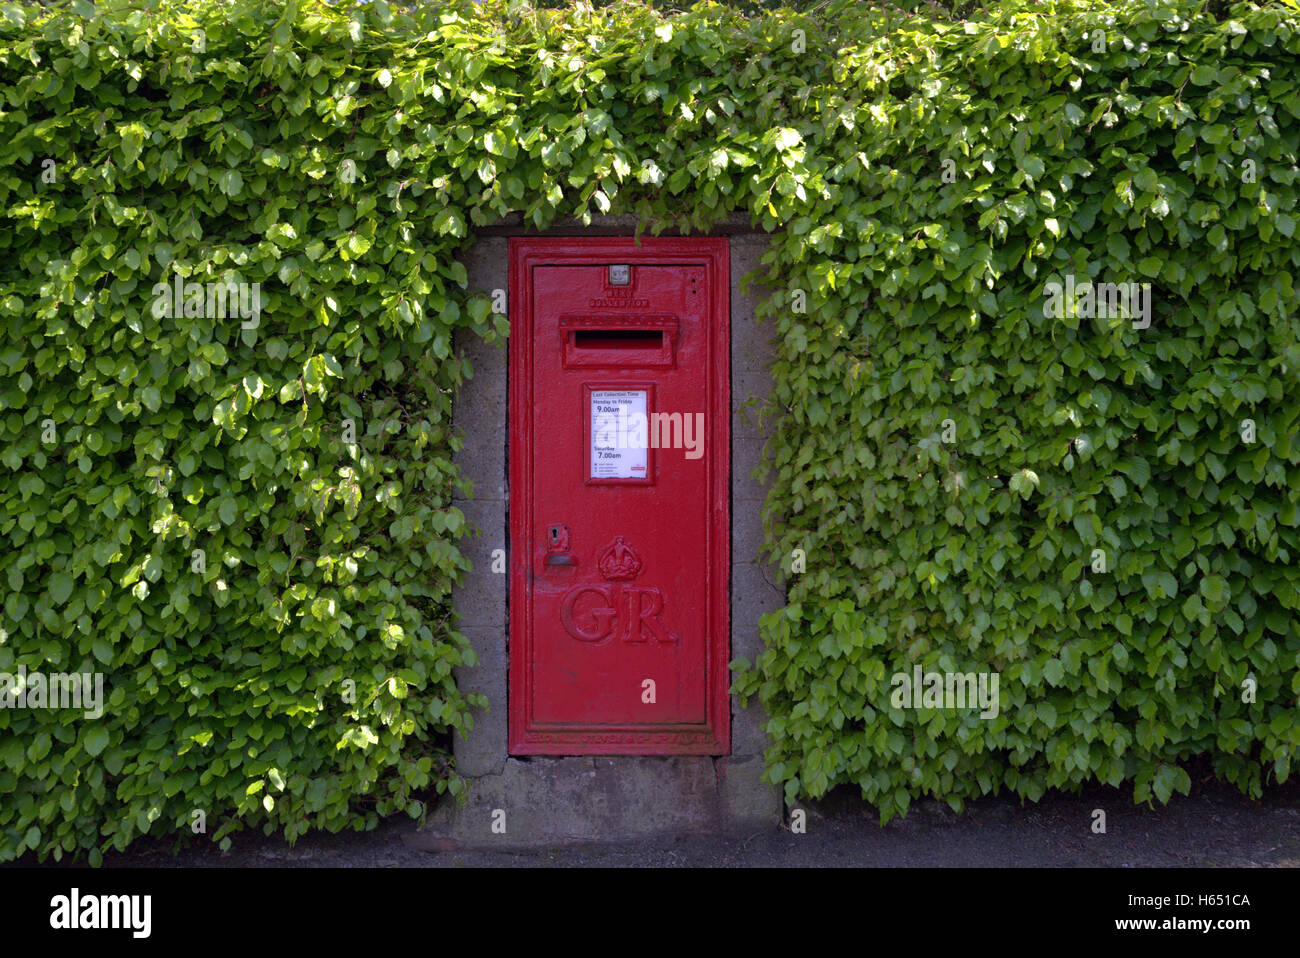 Géorgien rouge rouge lettre post office box couvert de lierre Banque D'Images